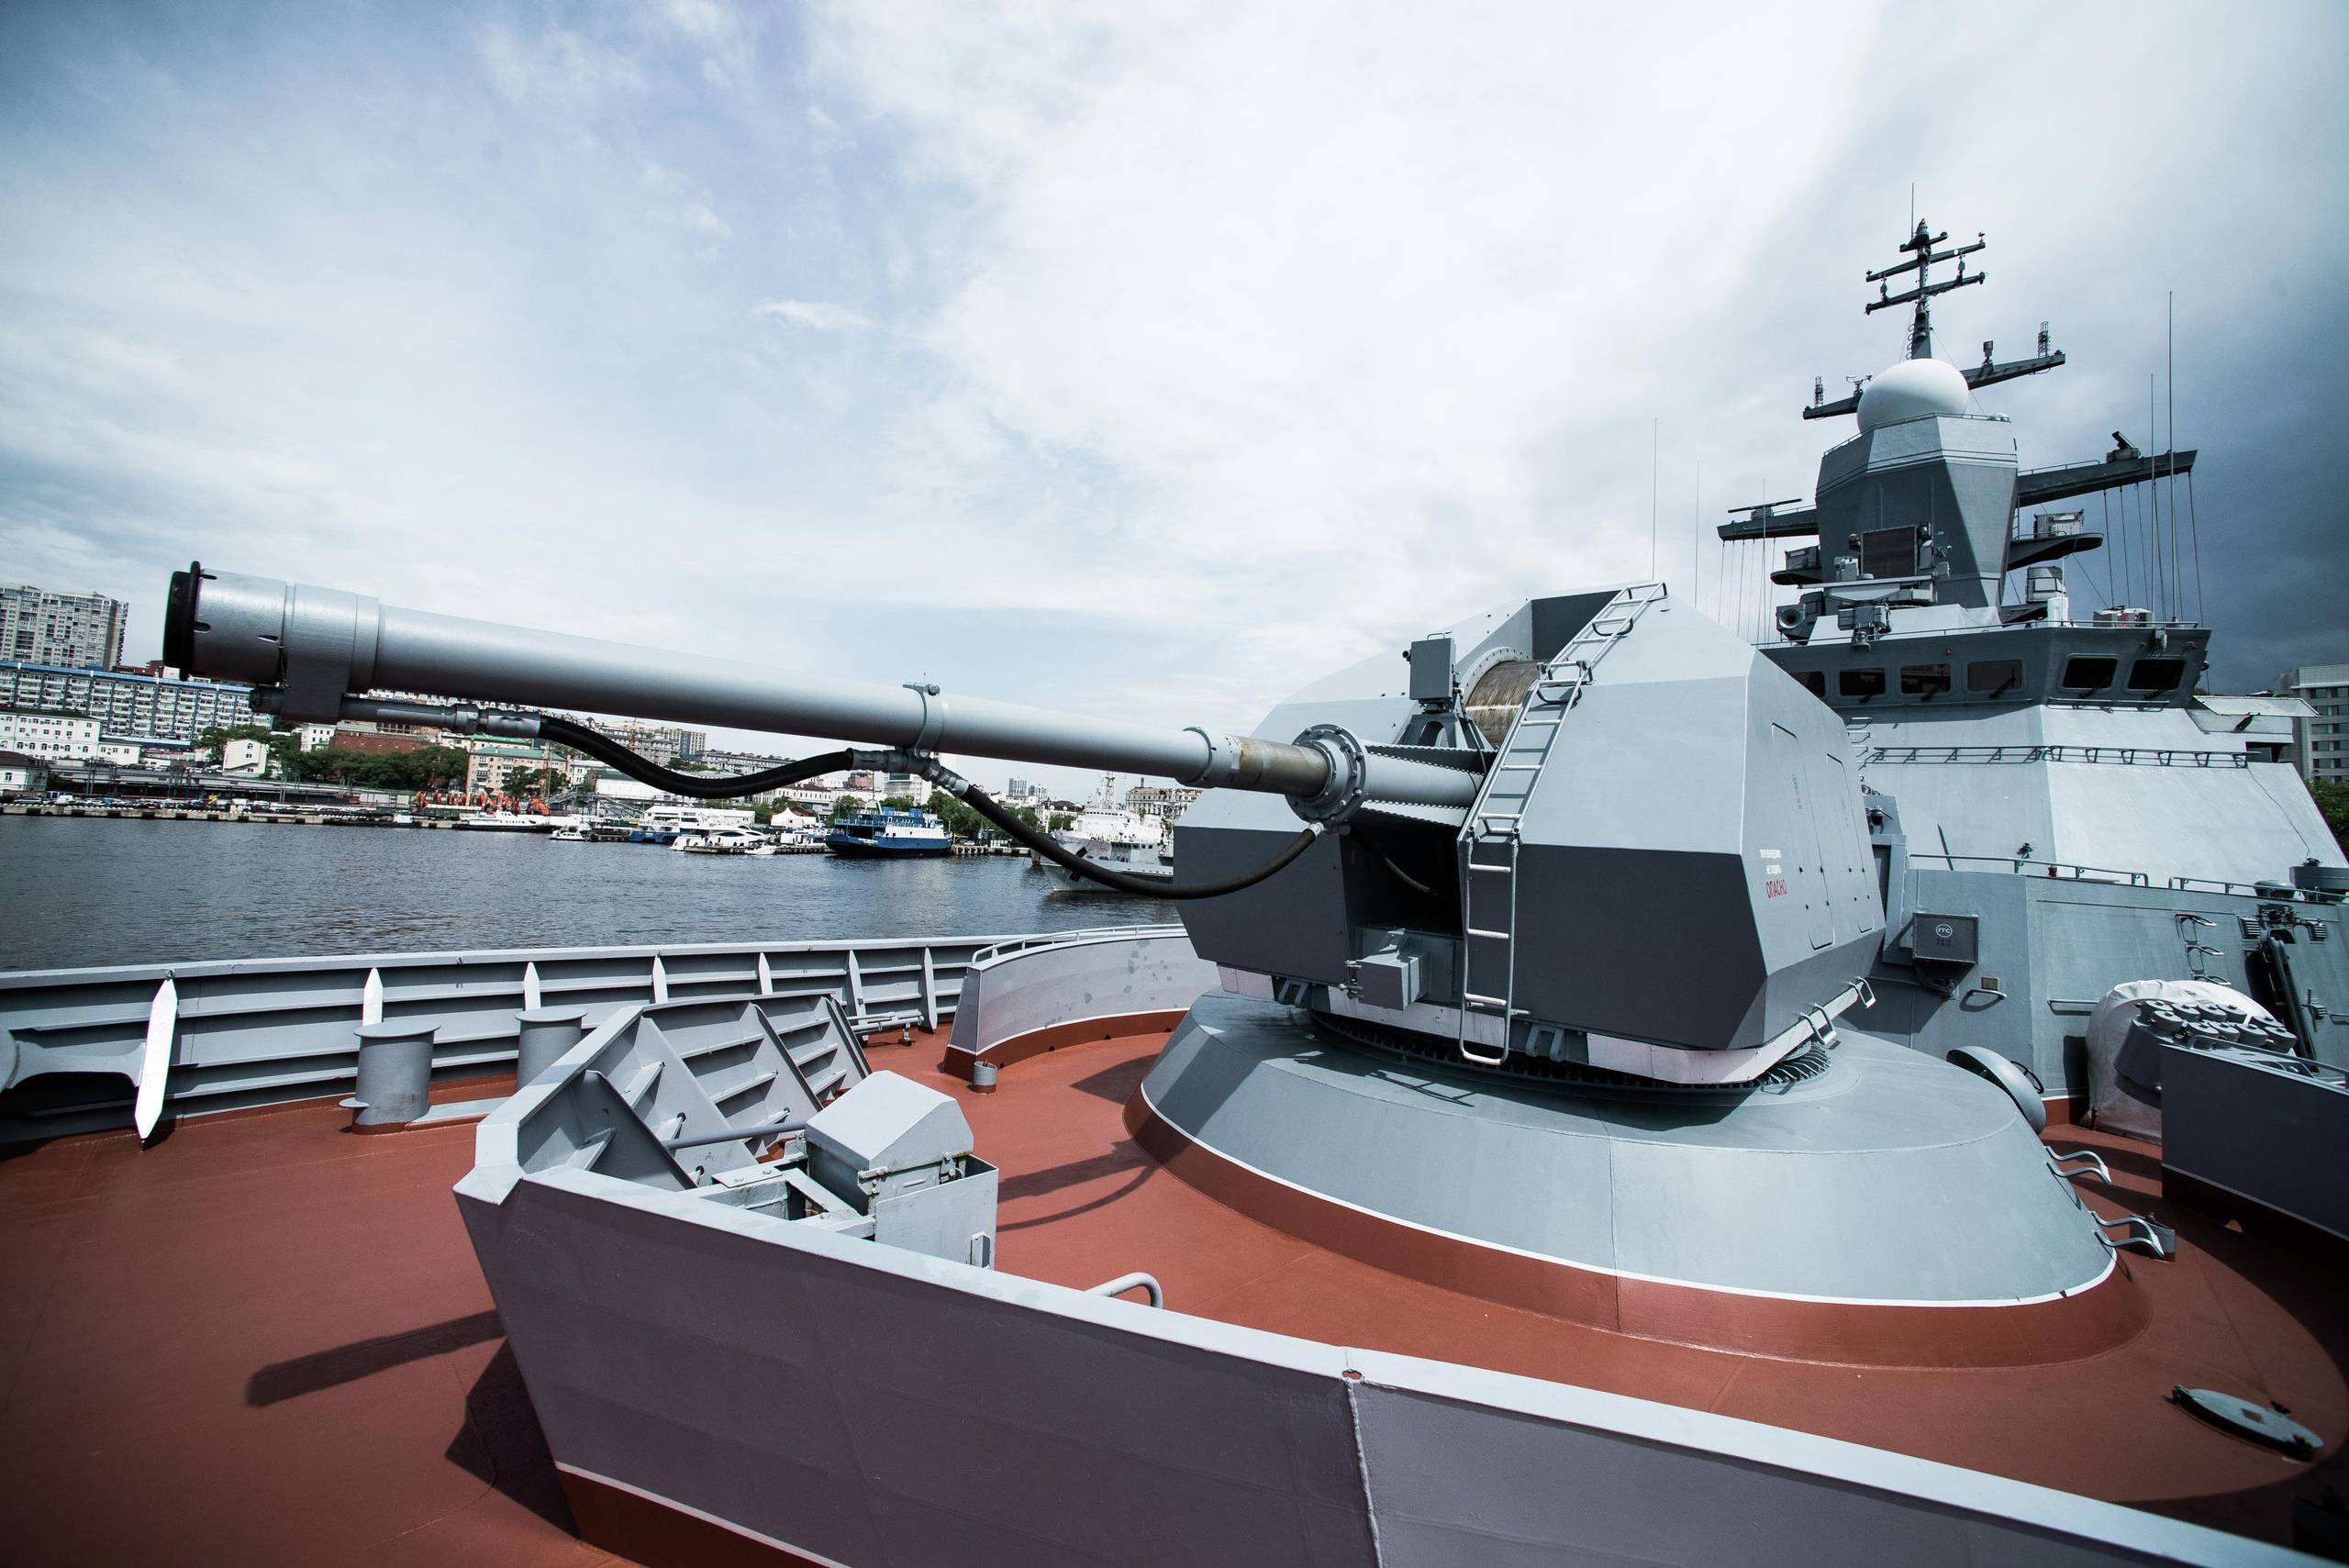 Самоходные артиллерийские установки в музее «боевая слава урала»